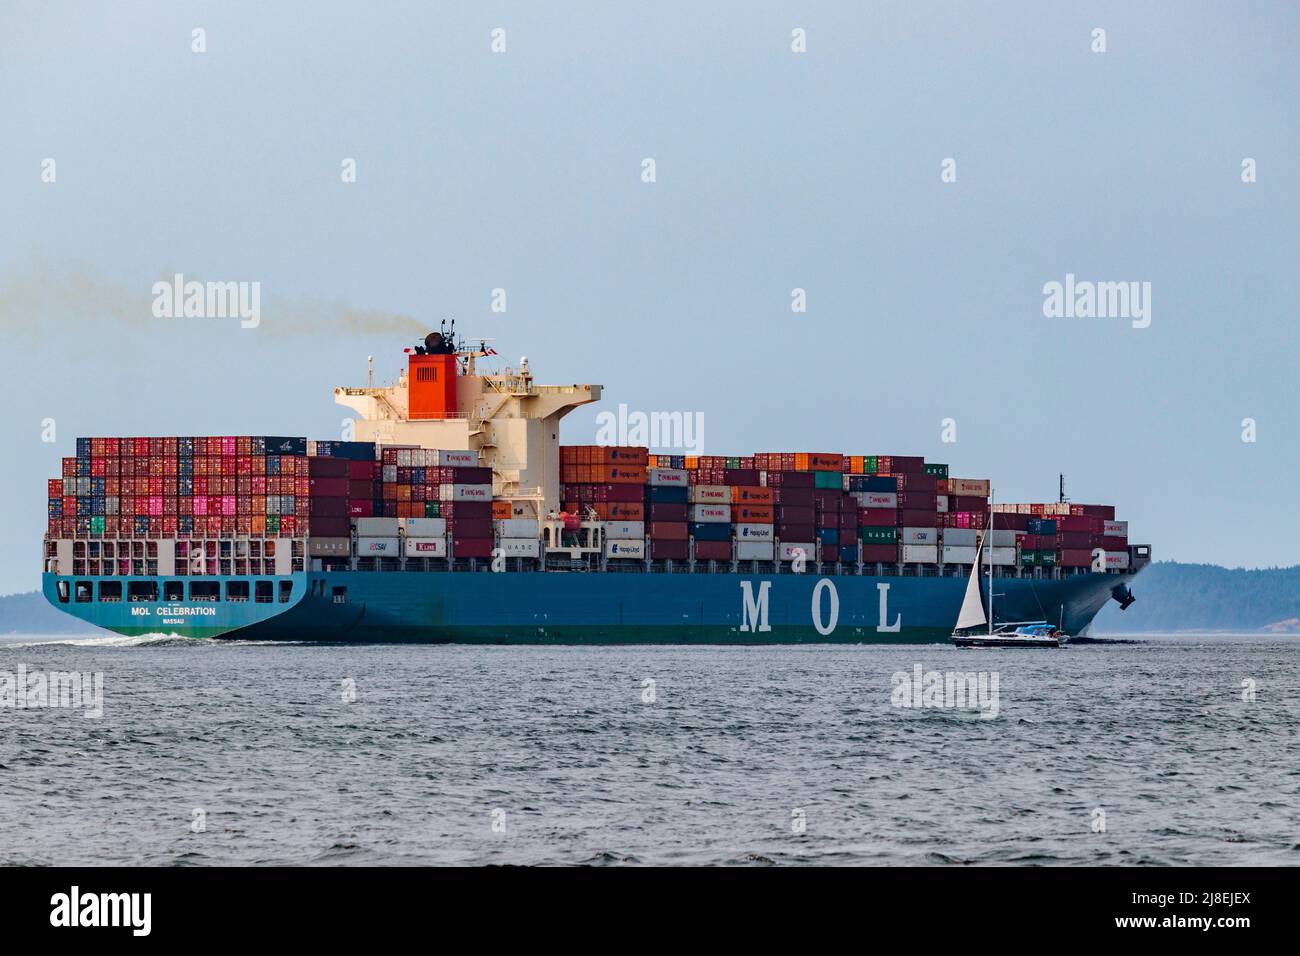 Un voilier est nain à côté de l'immense navire à conteneurs chargé « OL Celebration », en cours à Boundary Pass, dans le sud de la Colombie-Britannique Banque D'Images